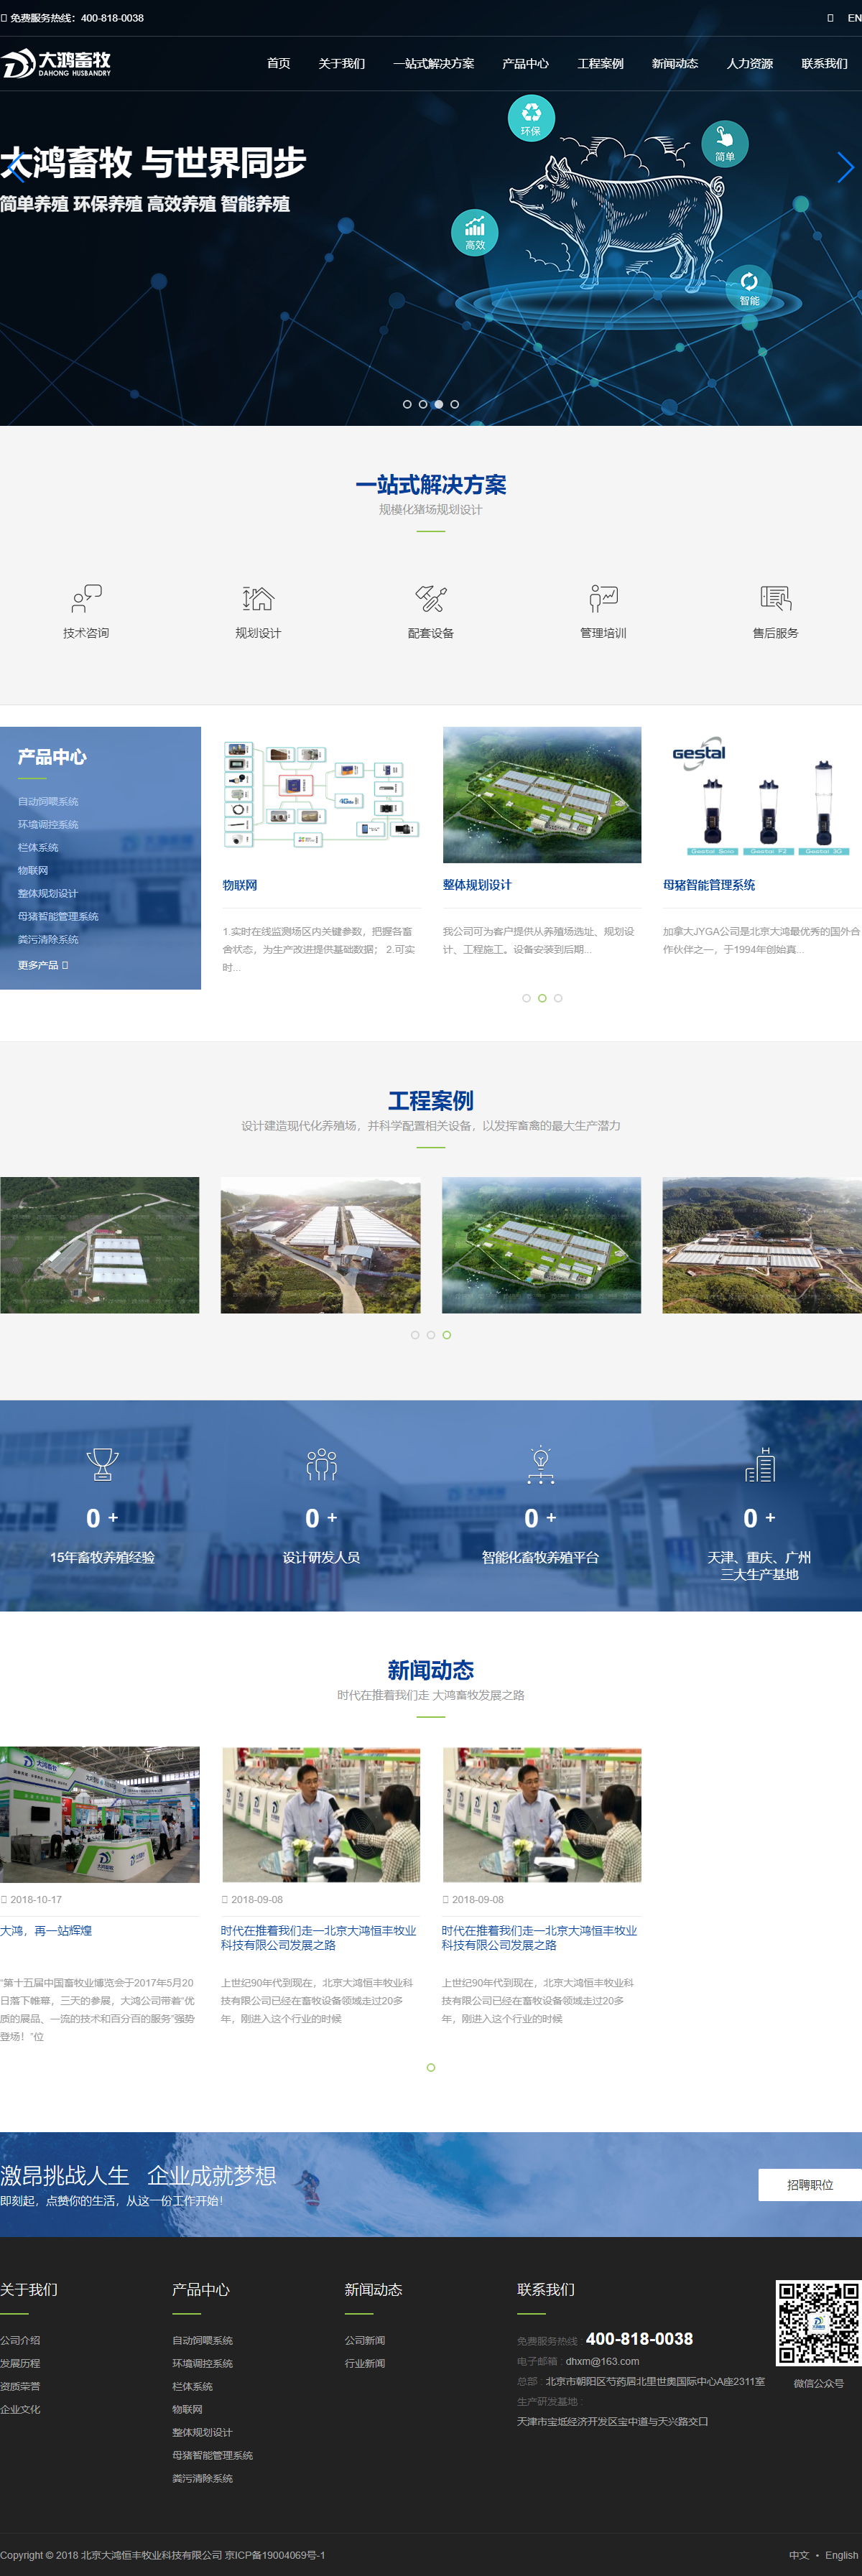 北京大鸿恒丰牧业科技有限公司网站案例